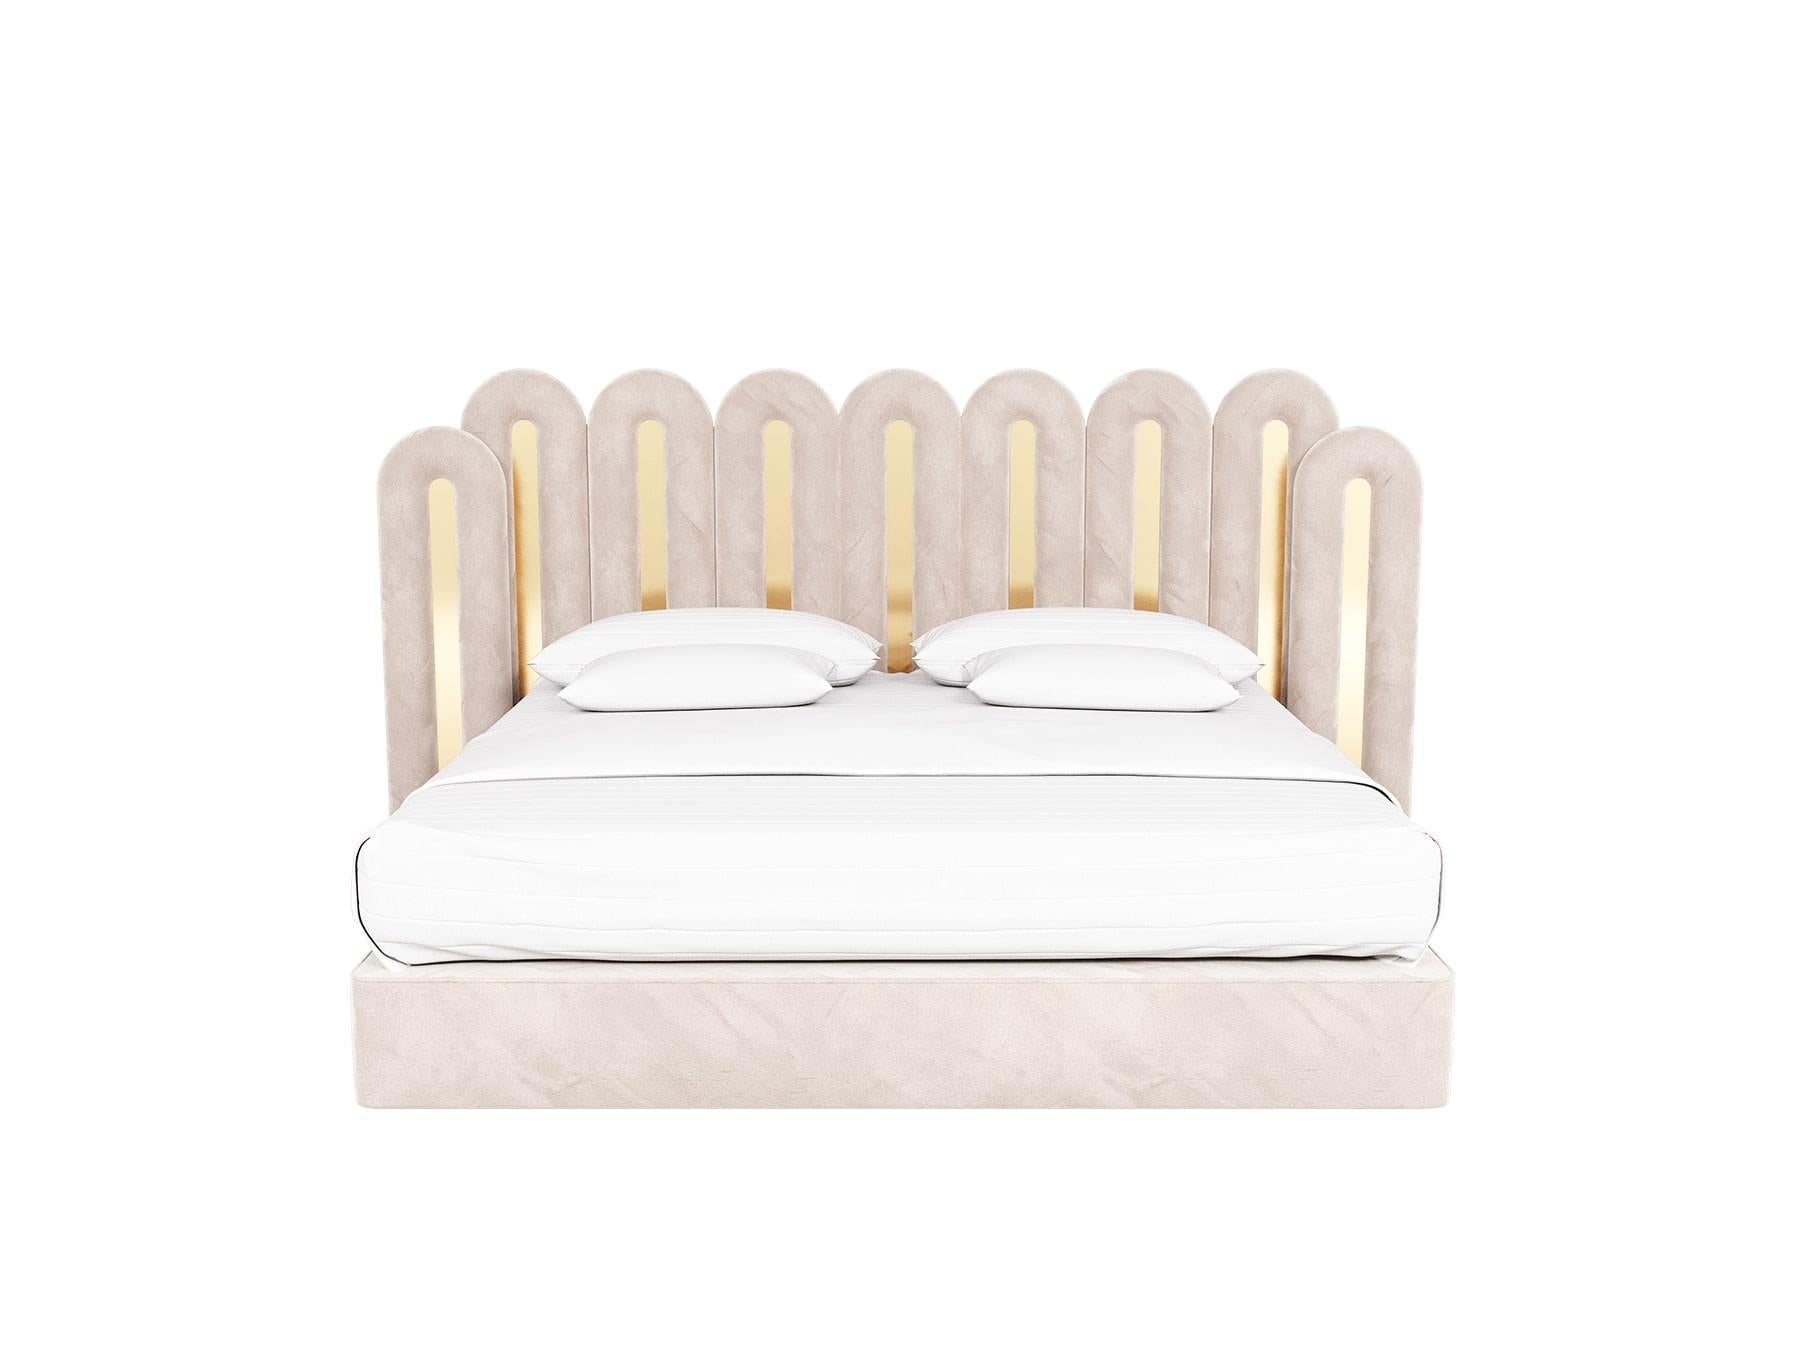 Le lit Demiz est une pièce d'apparat à l'allure moderne. C'est le lit moderne parfait, recouvert de velours, pour un projet d'hôtel de charme haut de gamme ou une chambre privée de luxe pleine de personnalité et de charisme.

MATERIAL : Structure